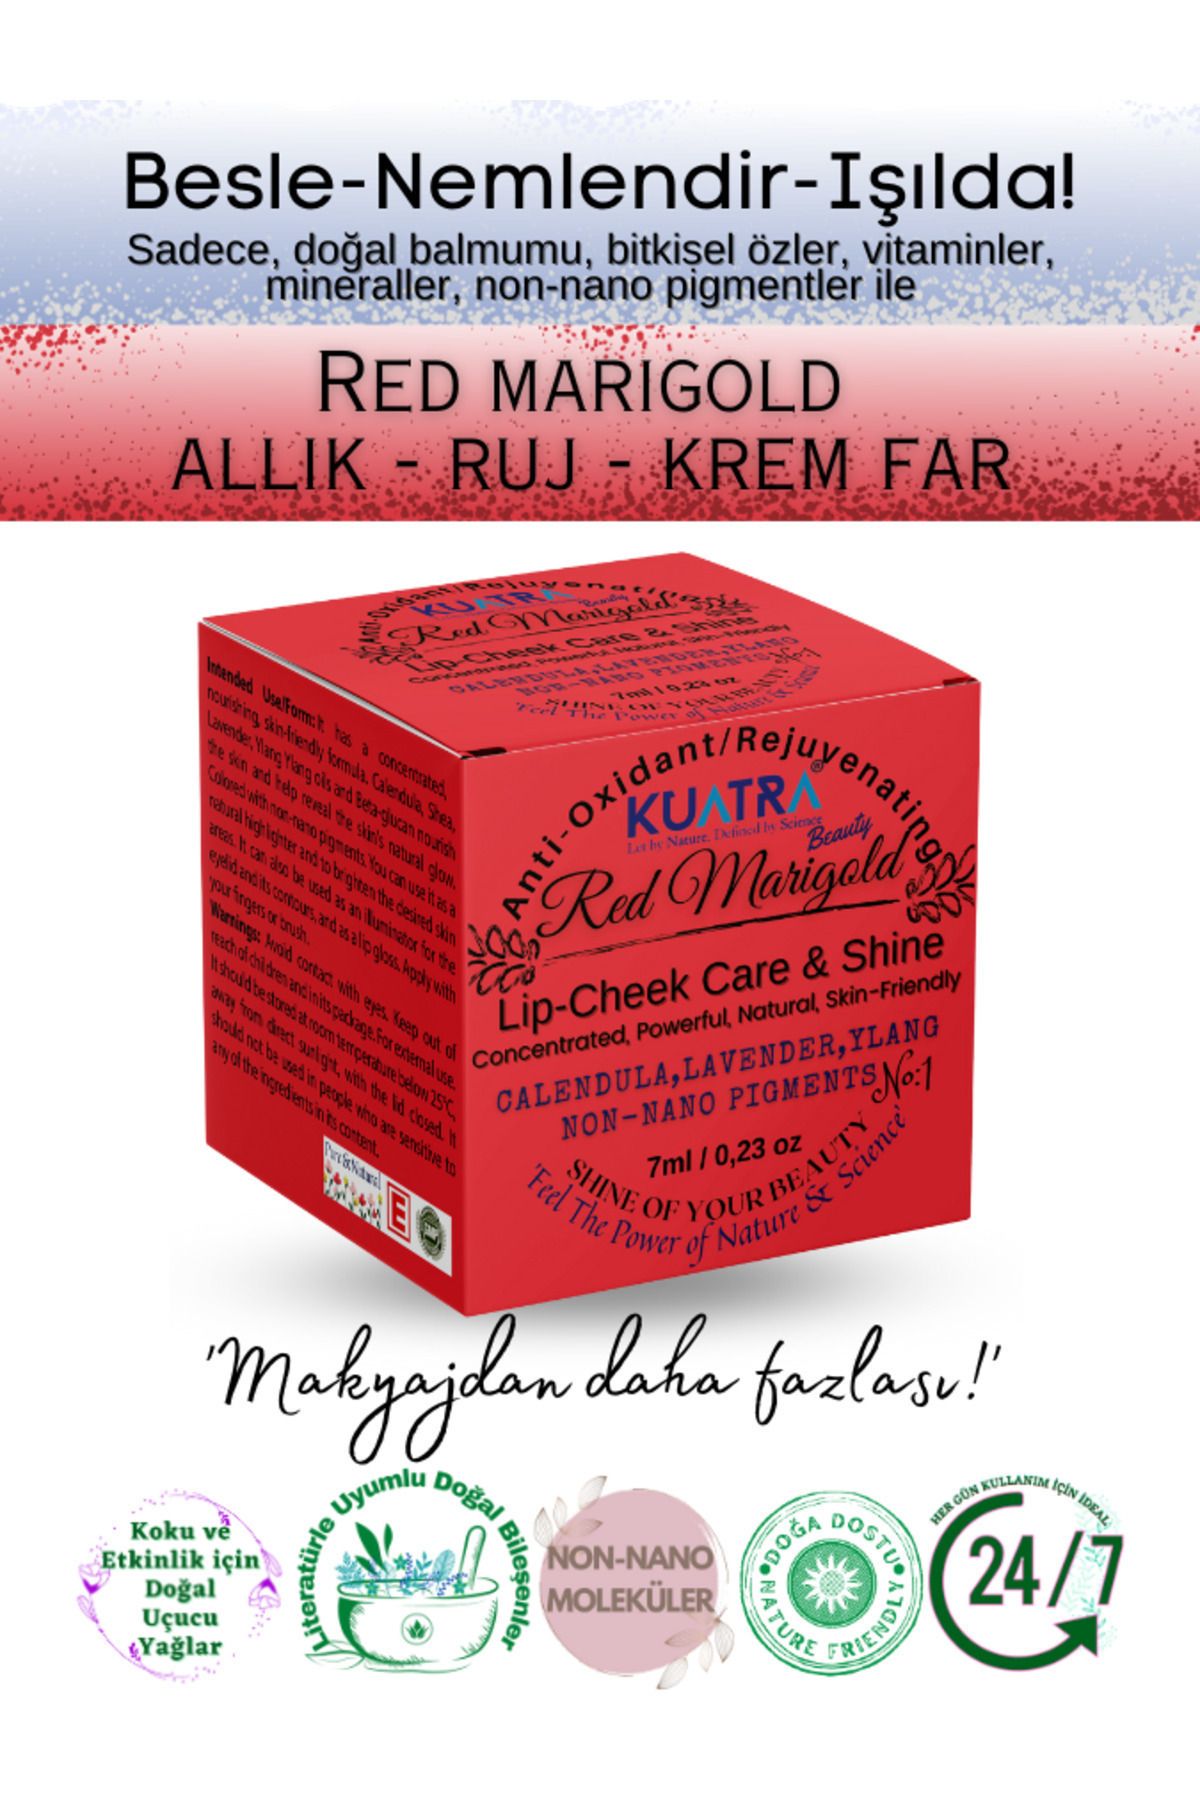 Kuatra Red Marigold Nemlendirici - Antioksidan Işıltı Veren Balm (DOĞAL İÇERİKLİ RUJ- ALLIK-GÖZ FARI)